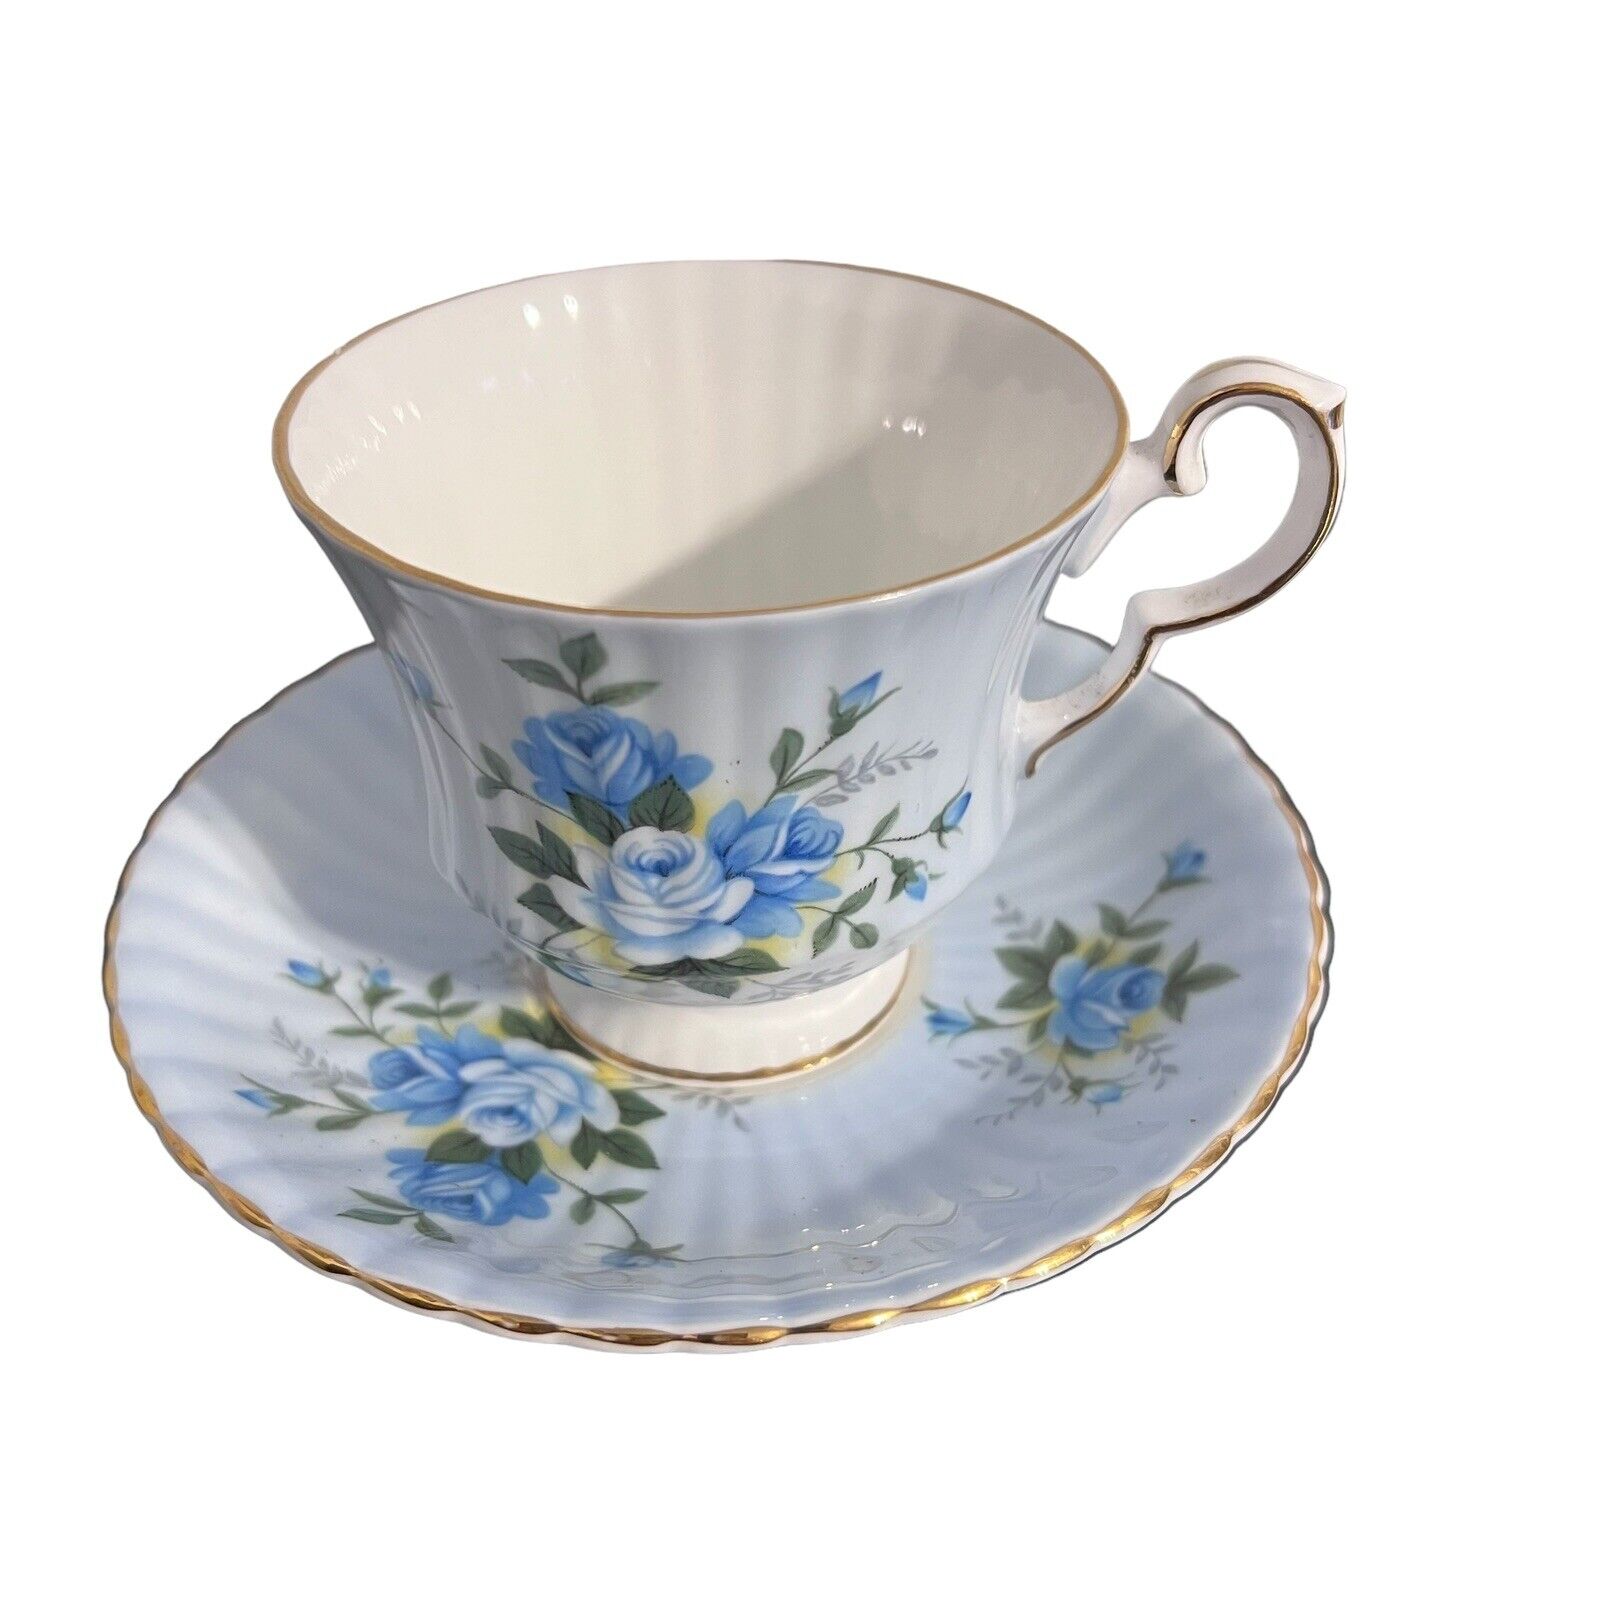 Vintage Royal Windsor Fine English Bone China Teacup and Saucer Blue floral 